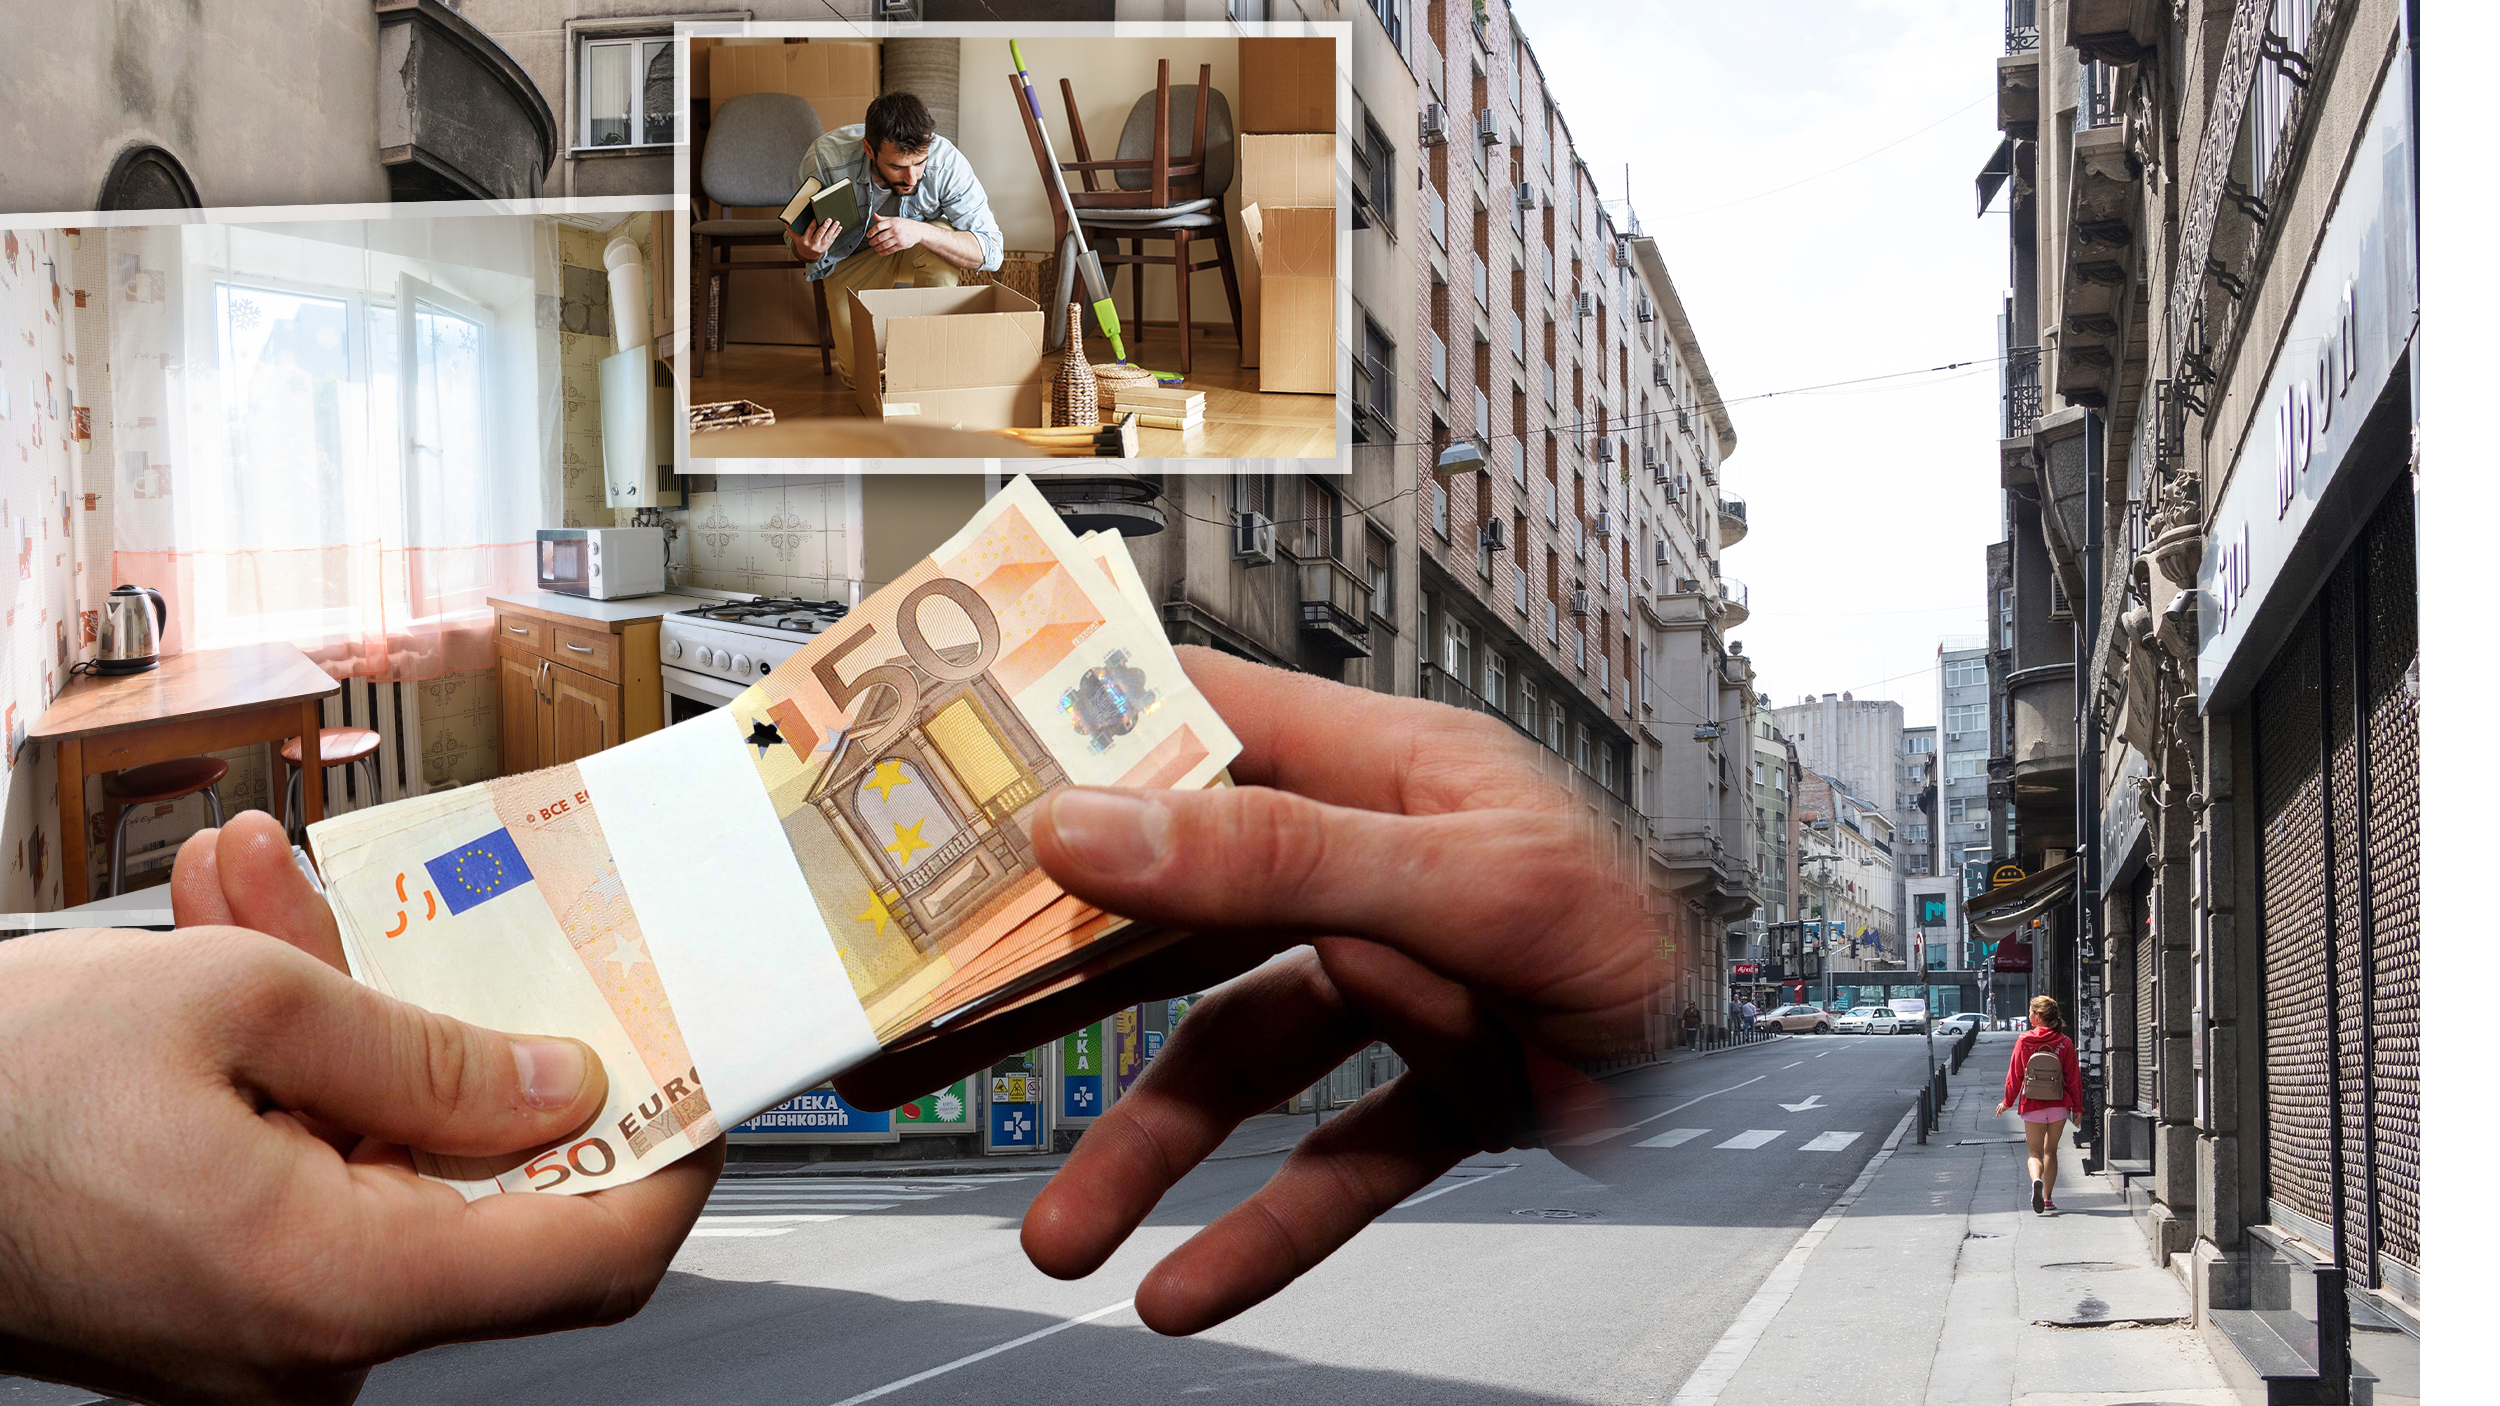 Dobra vest za podstanare u Beogradu: Padaju cene rentiranja i taj procenat nije zanemarljiv